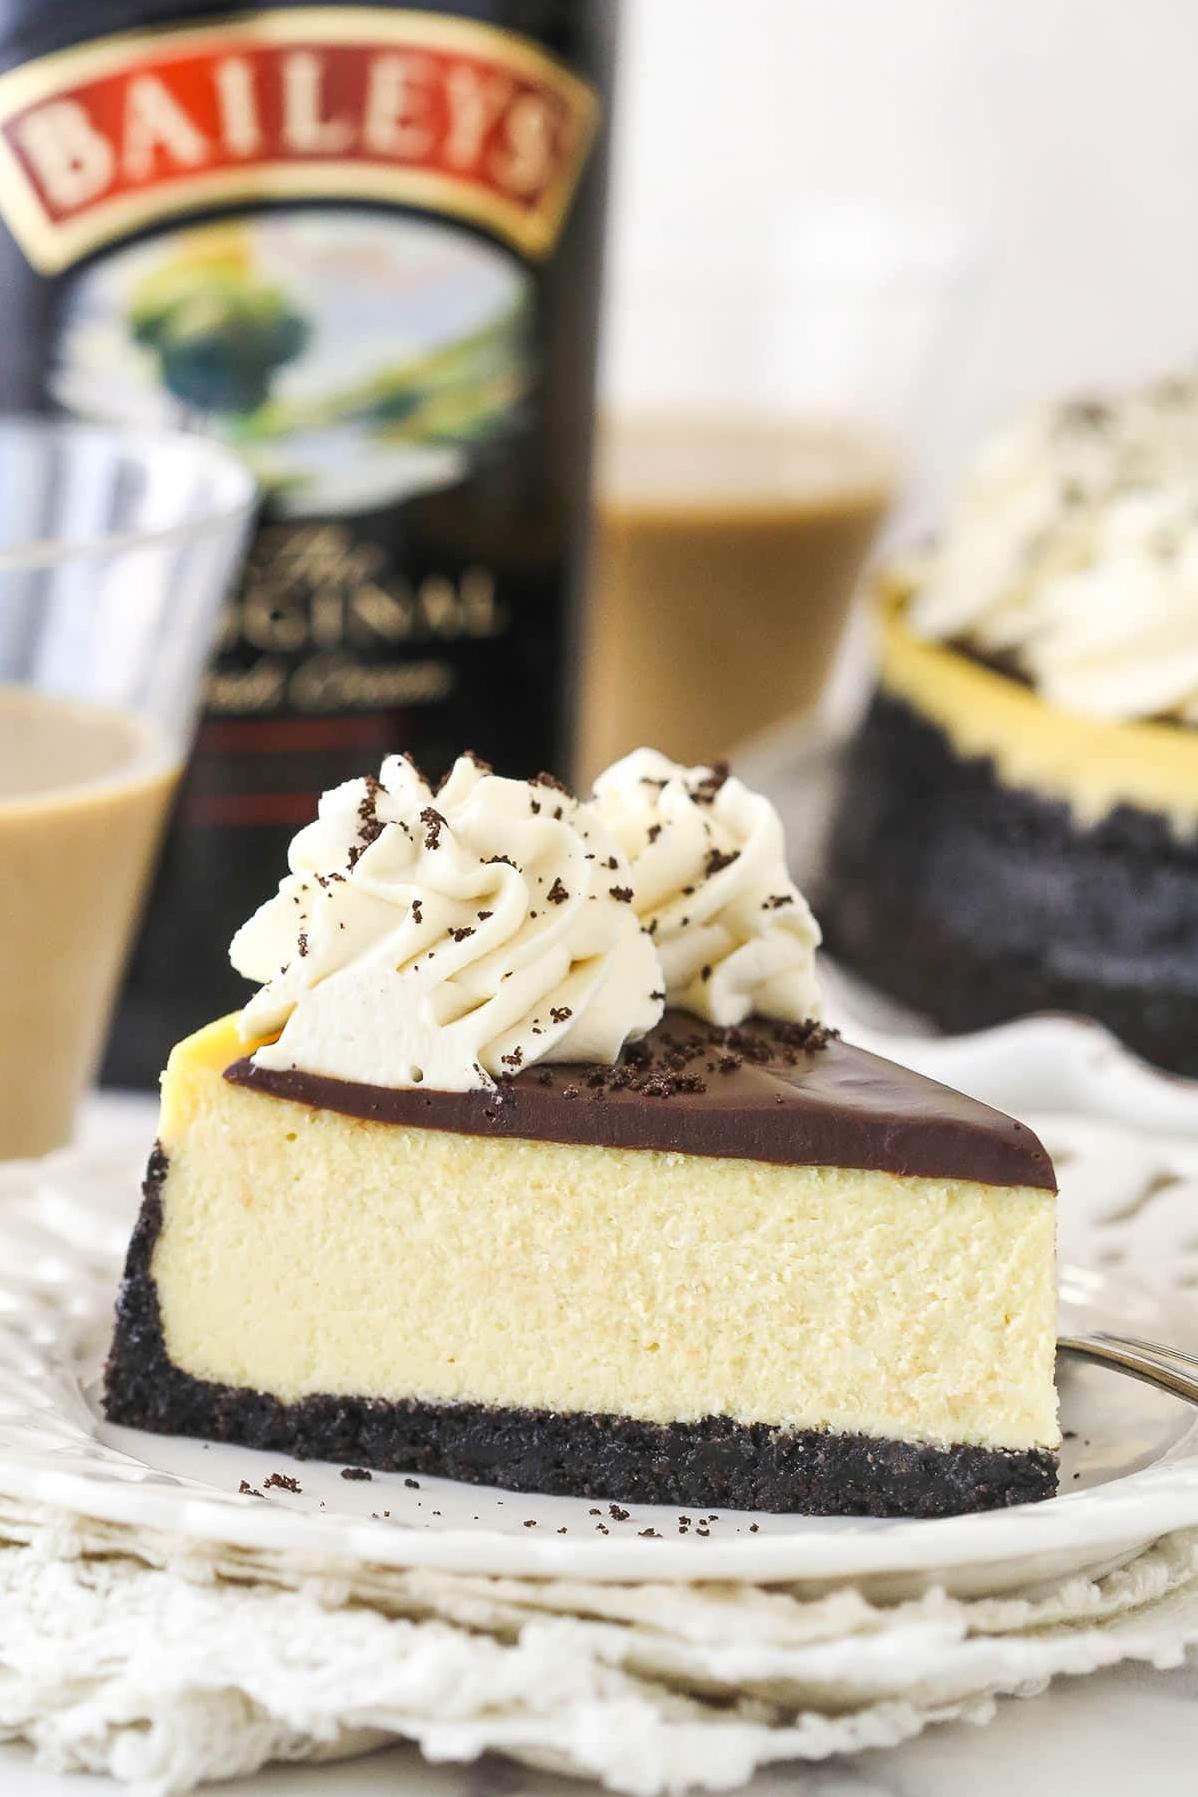  This Bailey's Irish Cream & Chocolate Cheesecake is worth every calorie